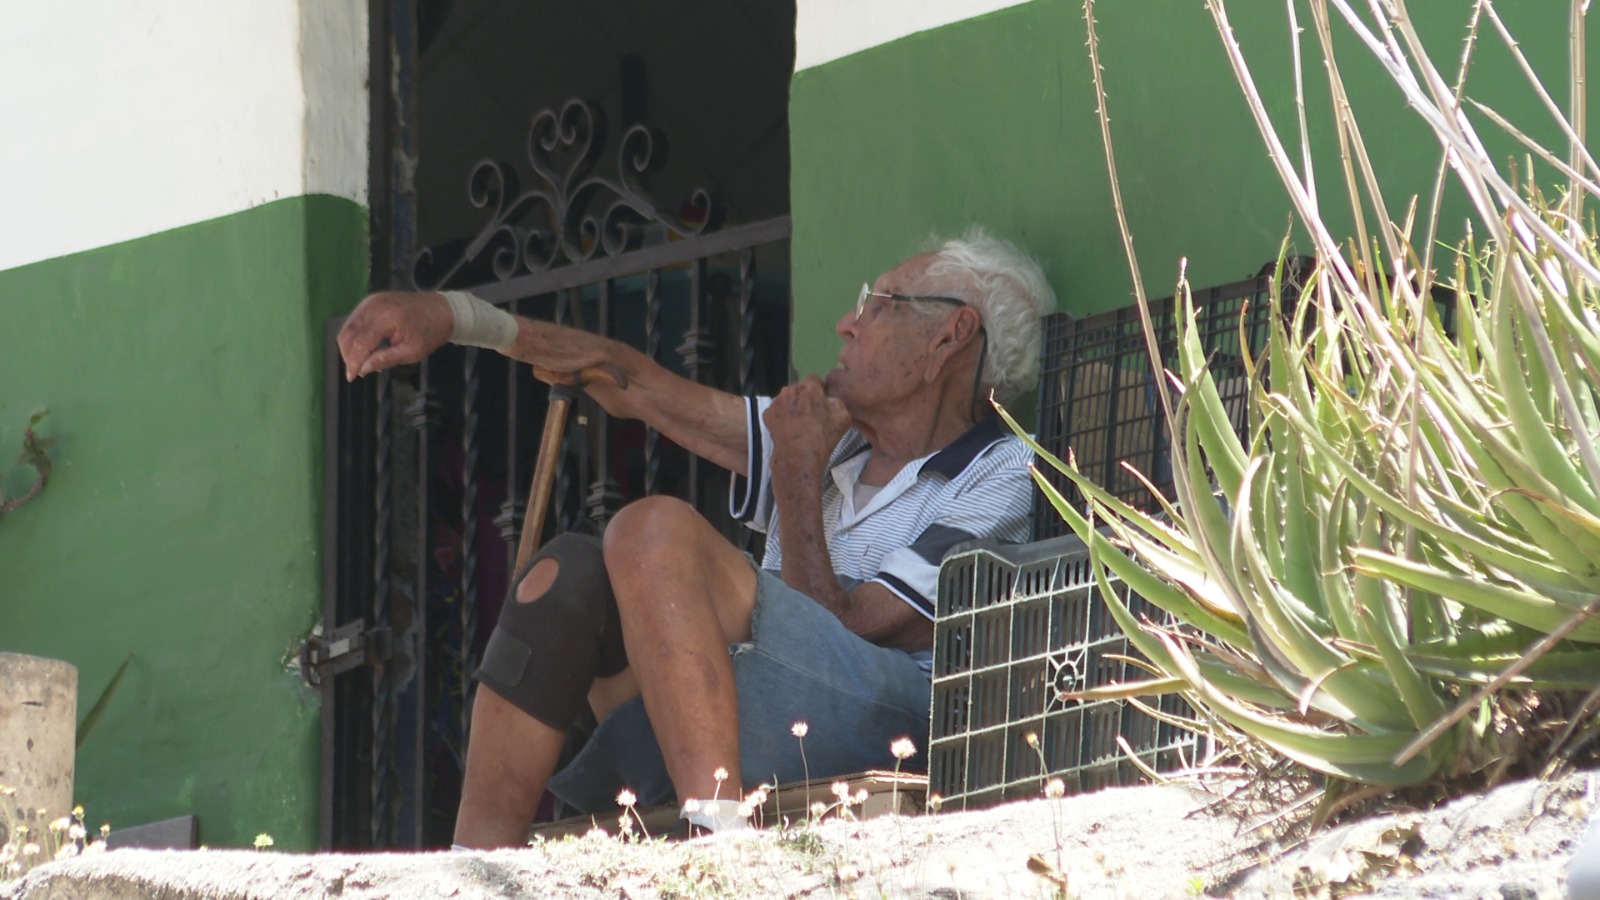 Vecino invade banqueta con jardinera; arriesga a peatones en la Jacarandas